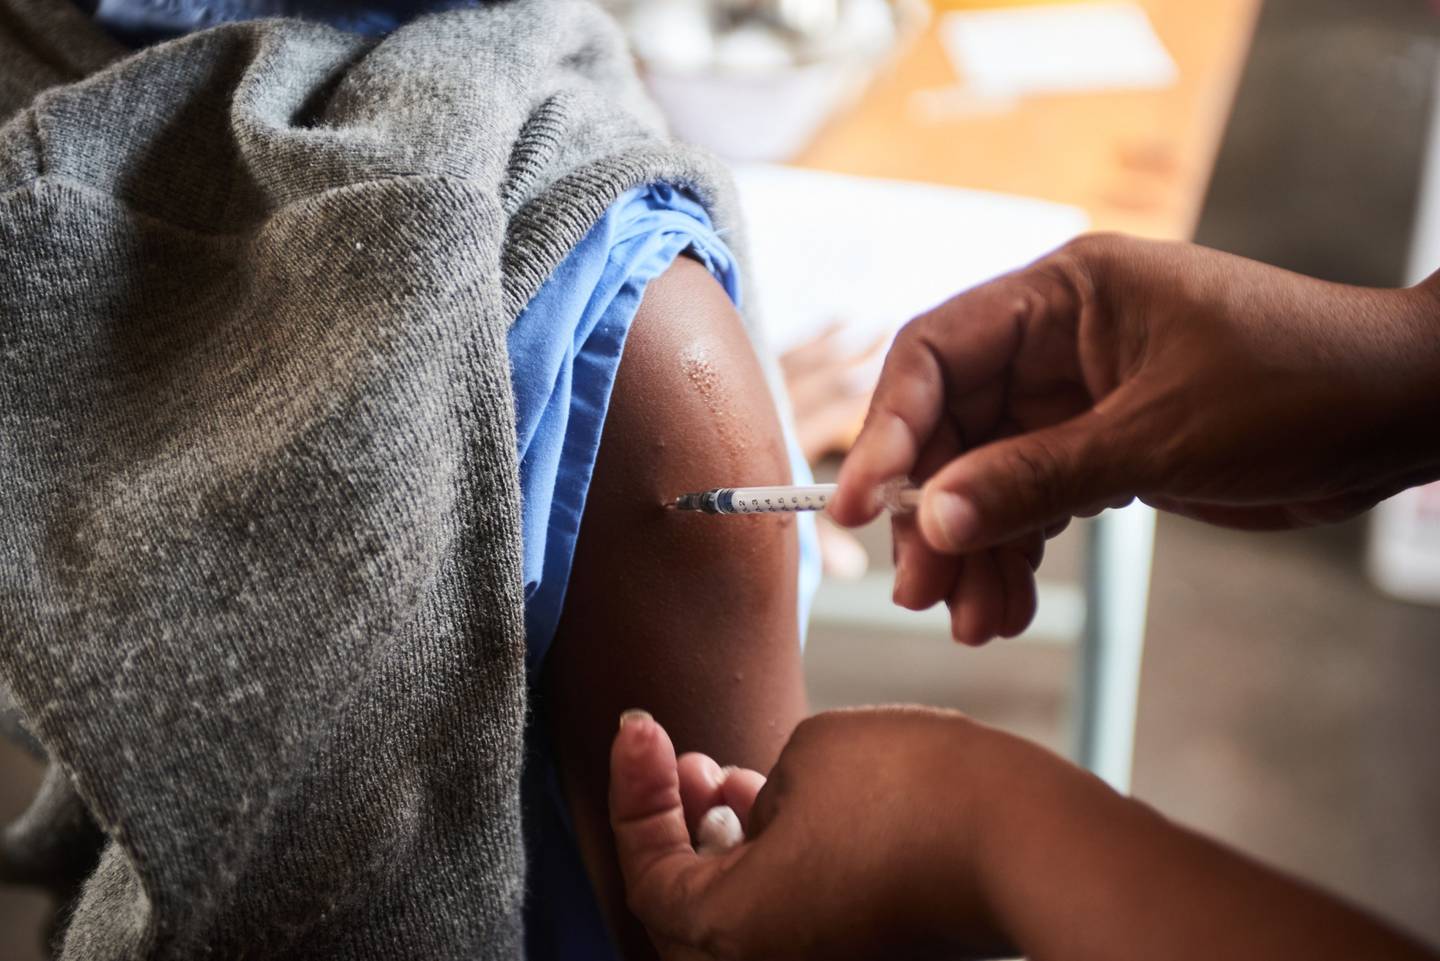 Uma razão para infecções em crianças de menos de 5 anos em Hong Kong com sintomas graves pode ser pela falta de exposição ao coronavírus nos últimos dois anos, então elas não desenvolveram imunidade